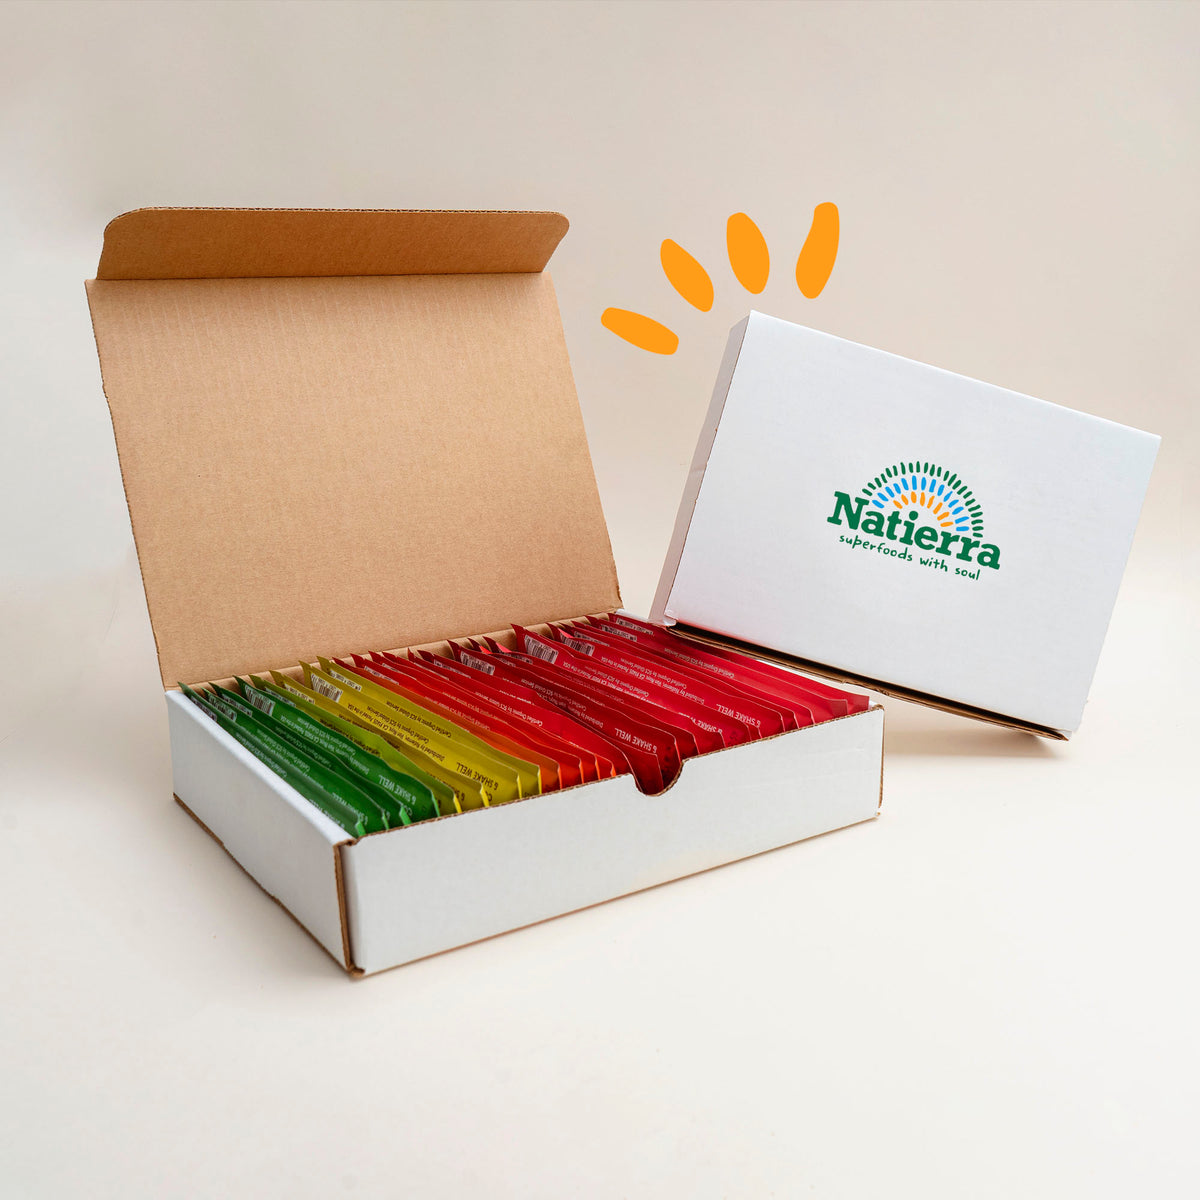 Natierra 24 smoothies signature box